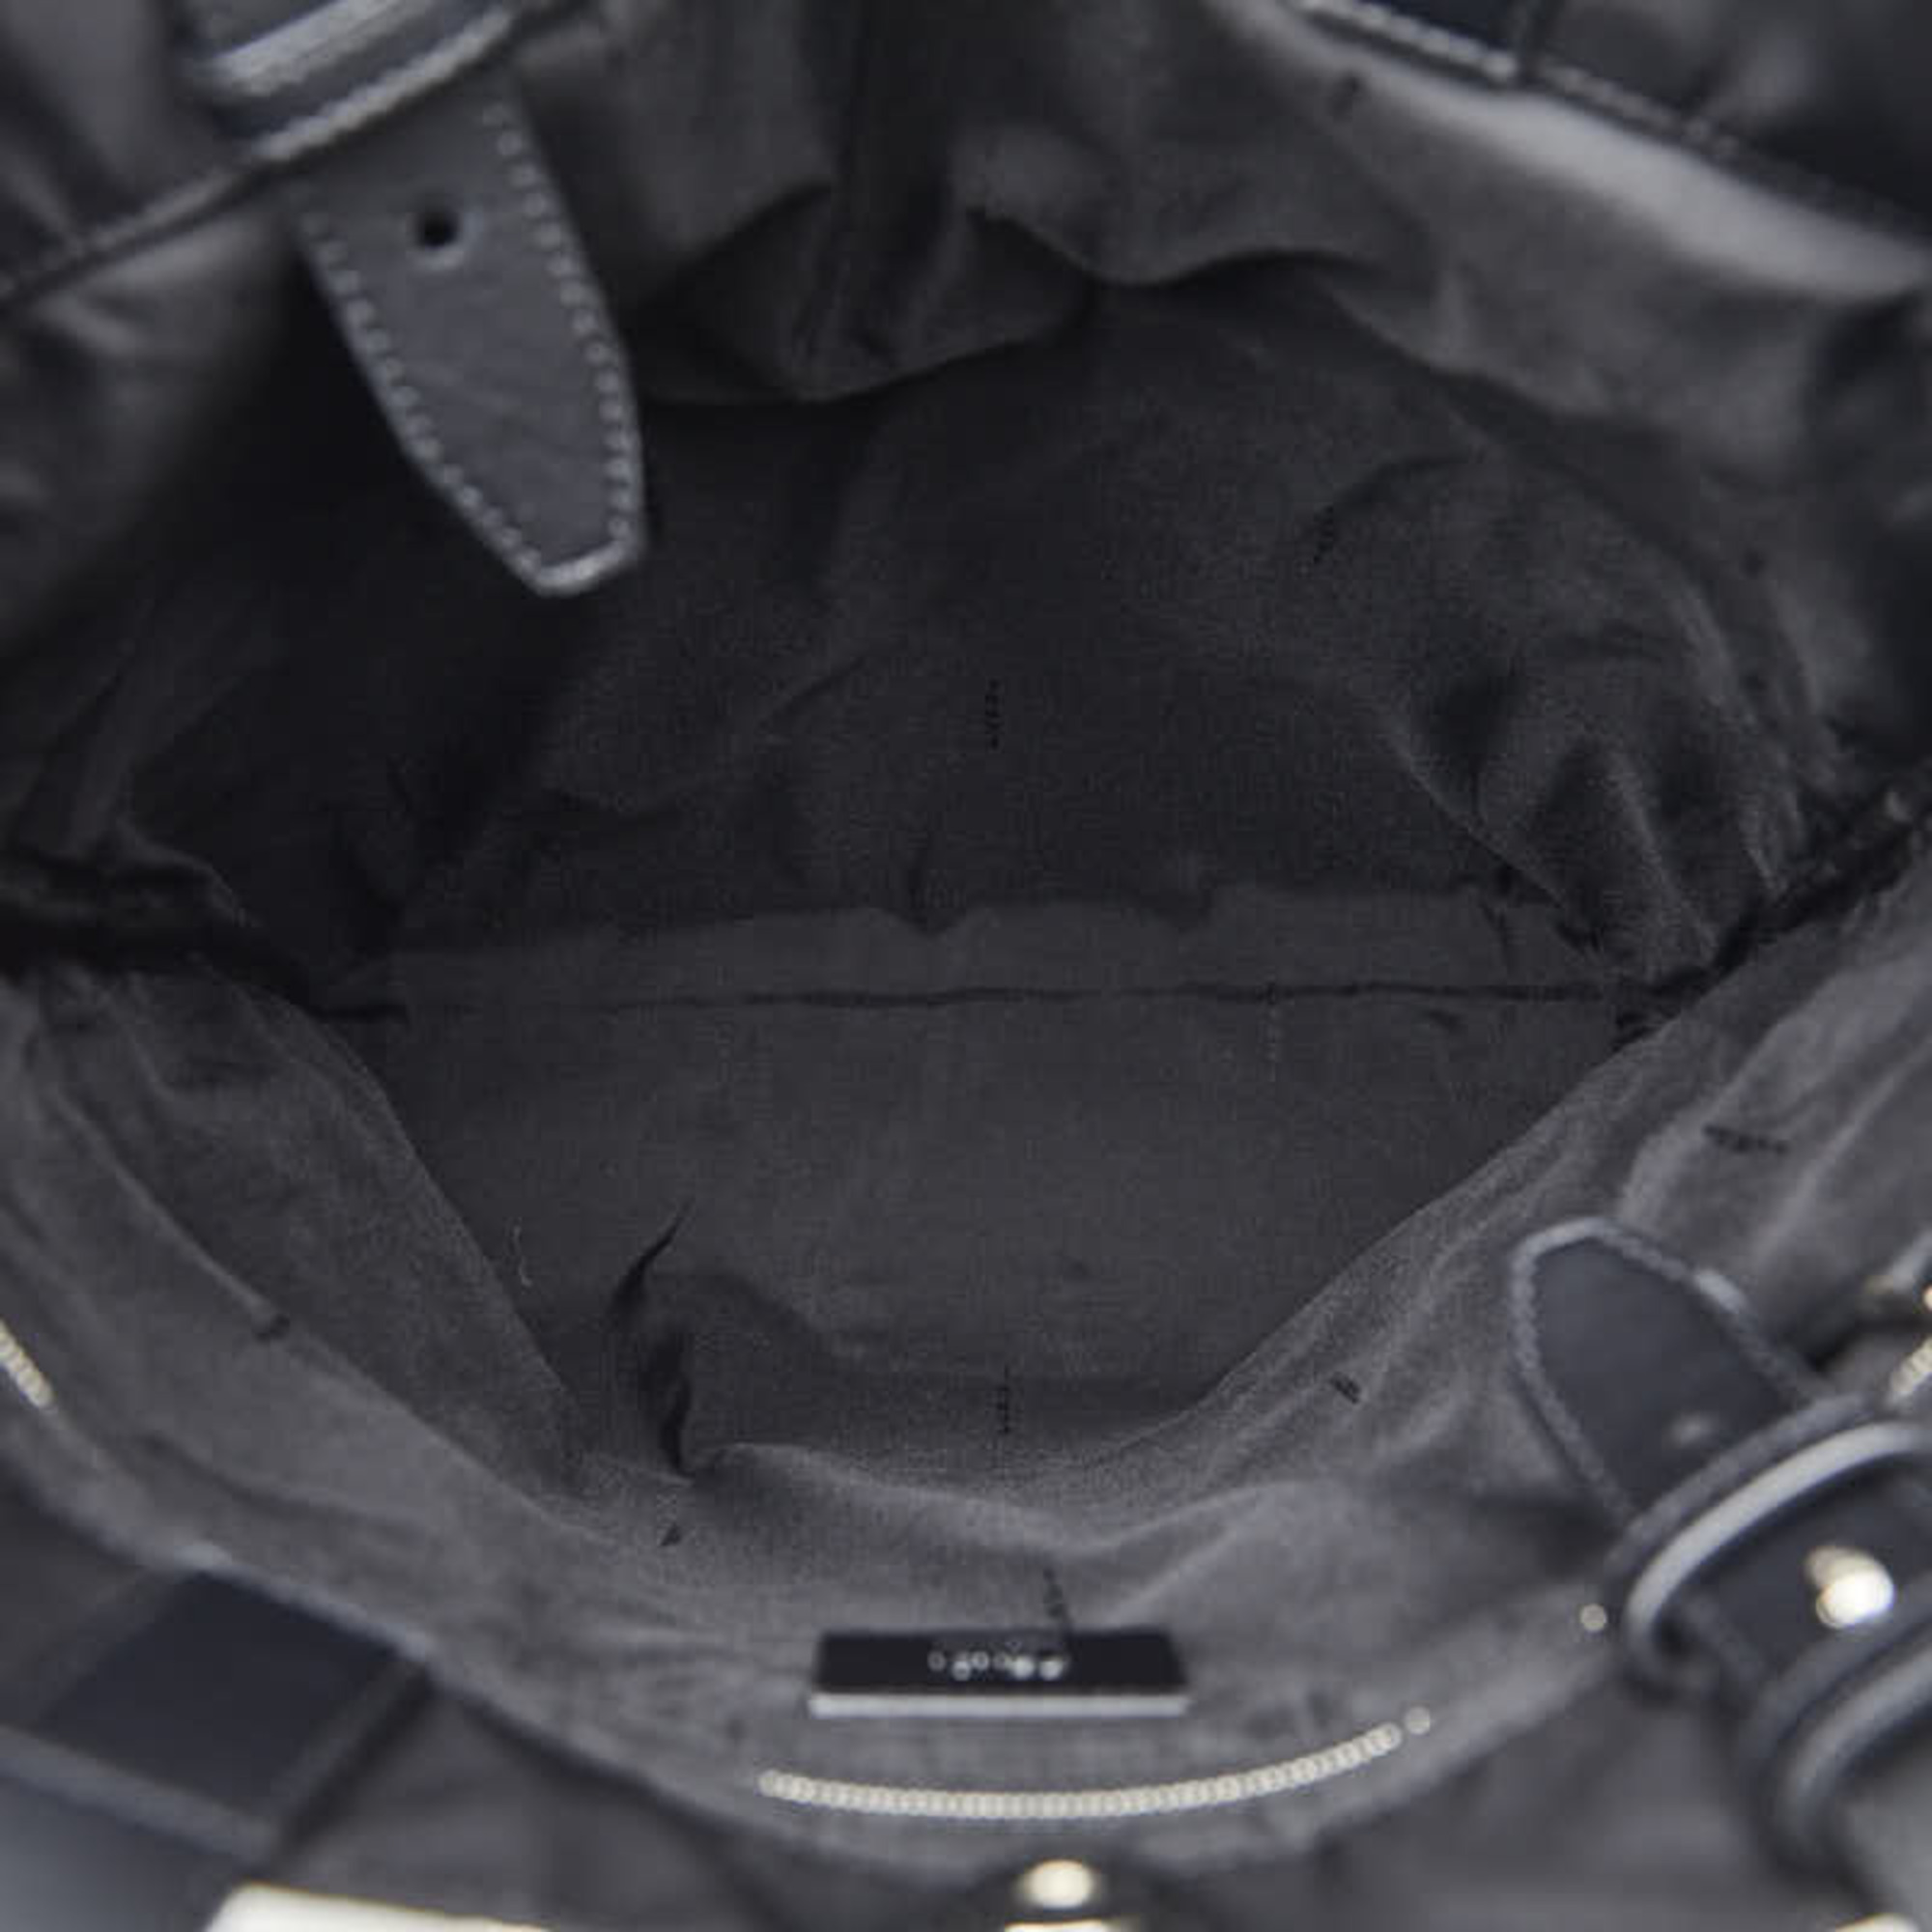 FENDI Monster Bugs Tote Bag 7V32 Black Nylon Leather Women's